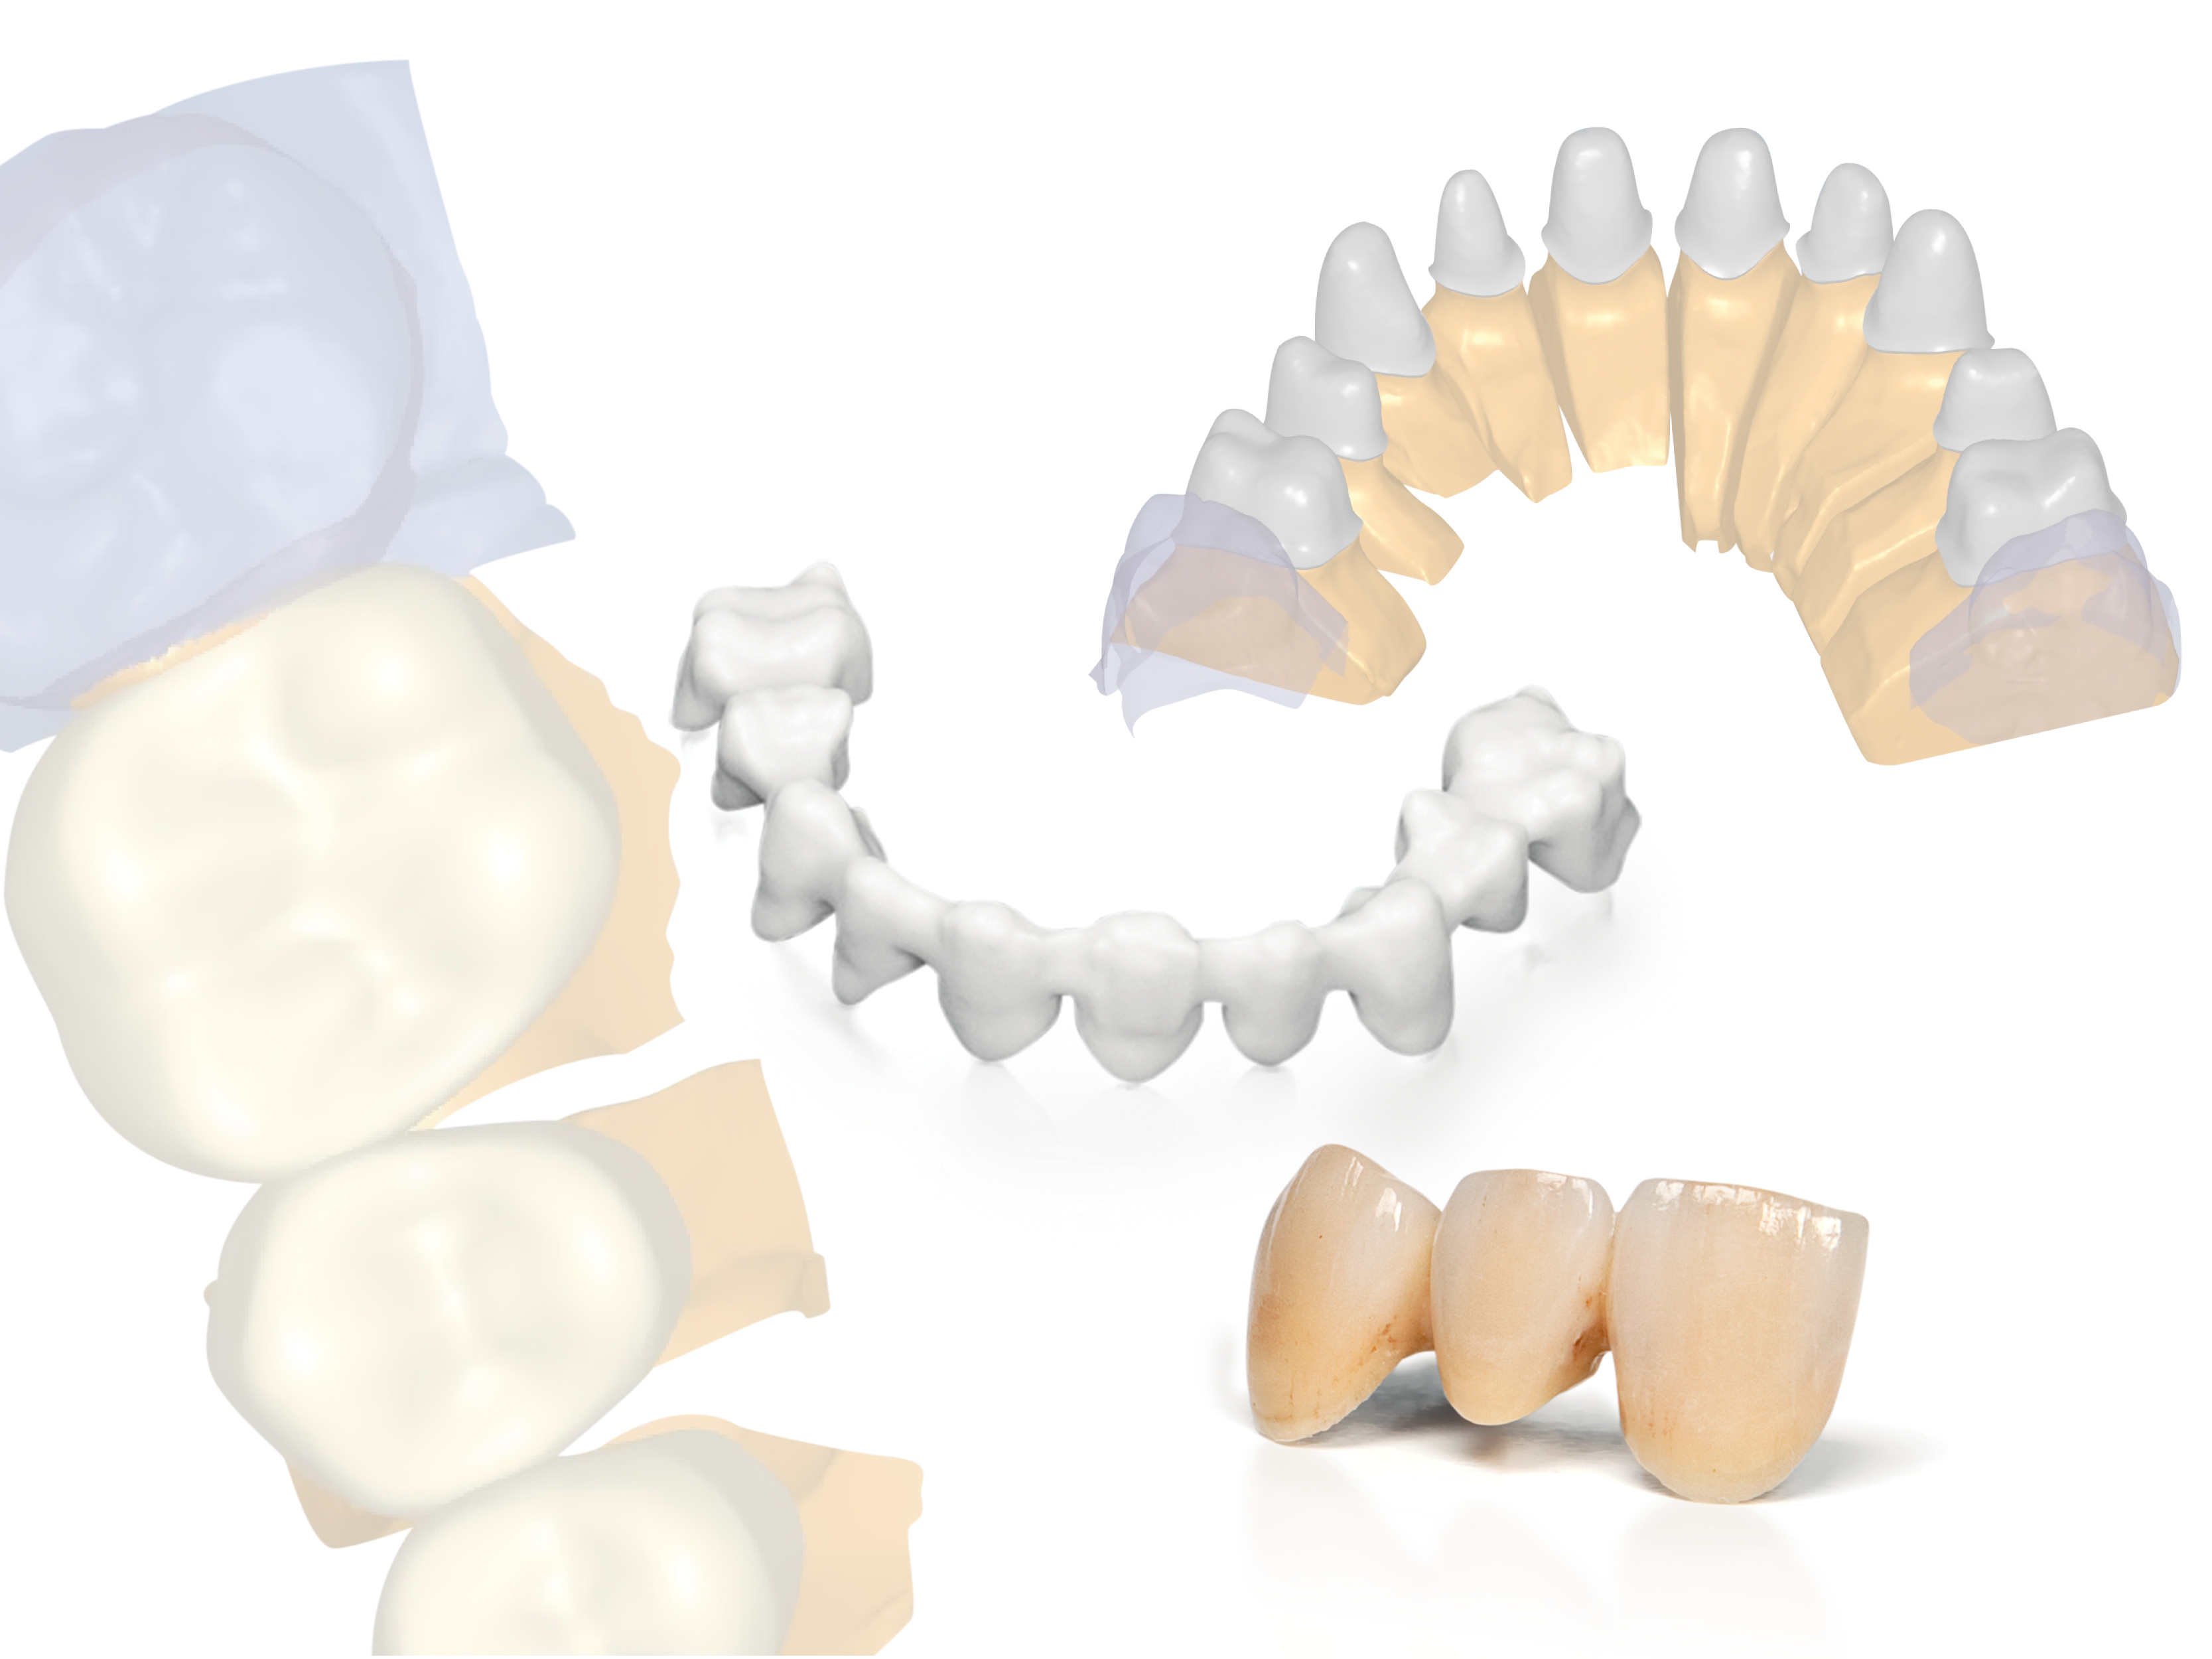 Nowy, otwarty system CAD/CAM Planmeca dla dentystów i pracowni protetycznych